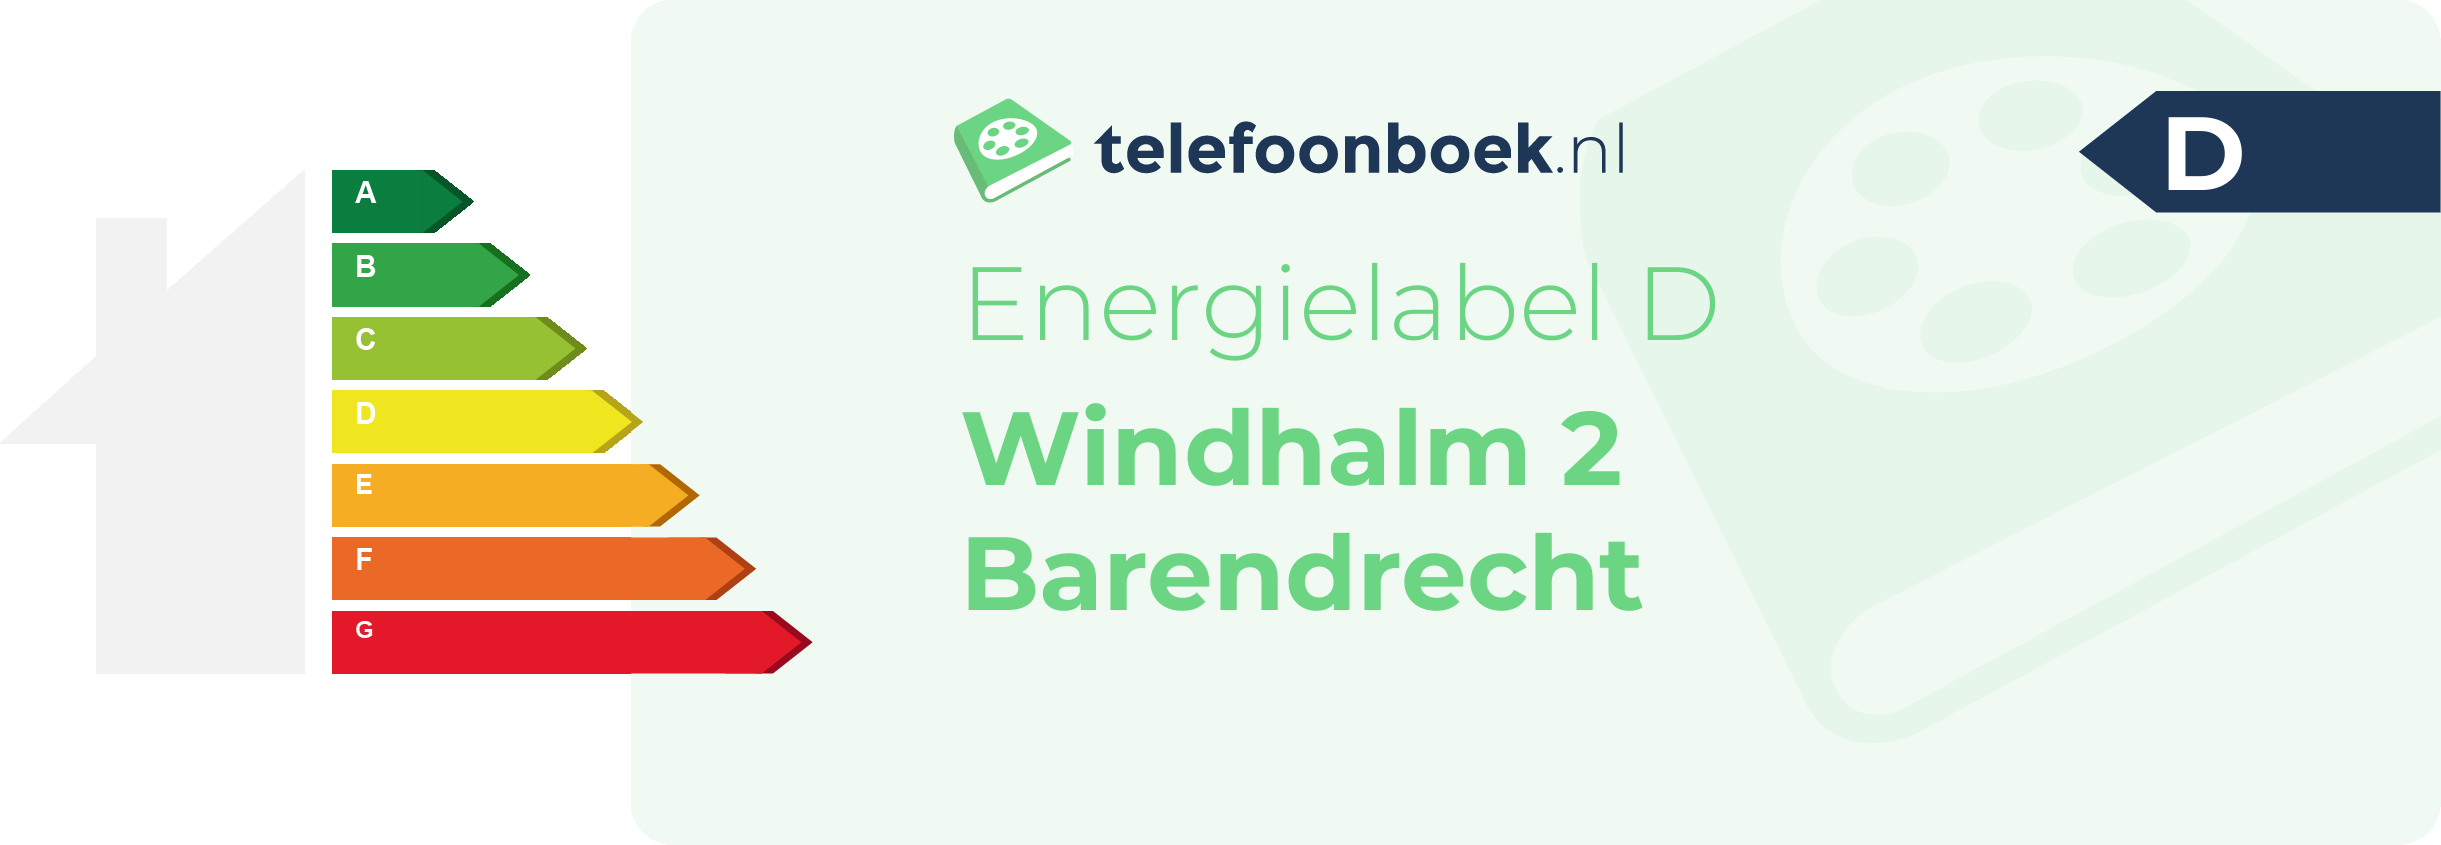 Energielabel Windhalm 2 Barendrecht